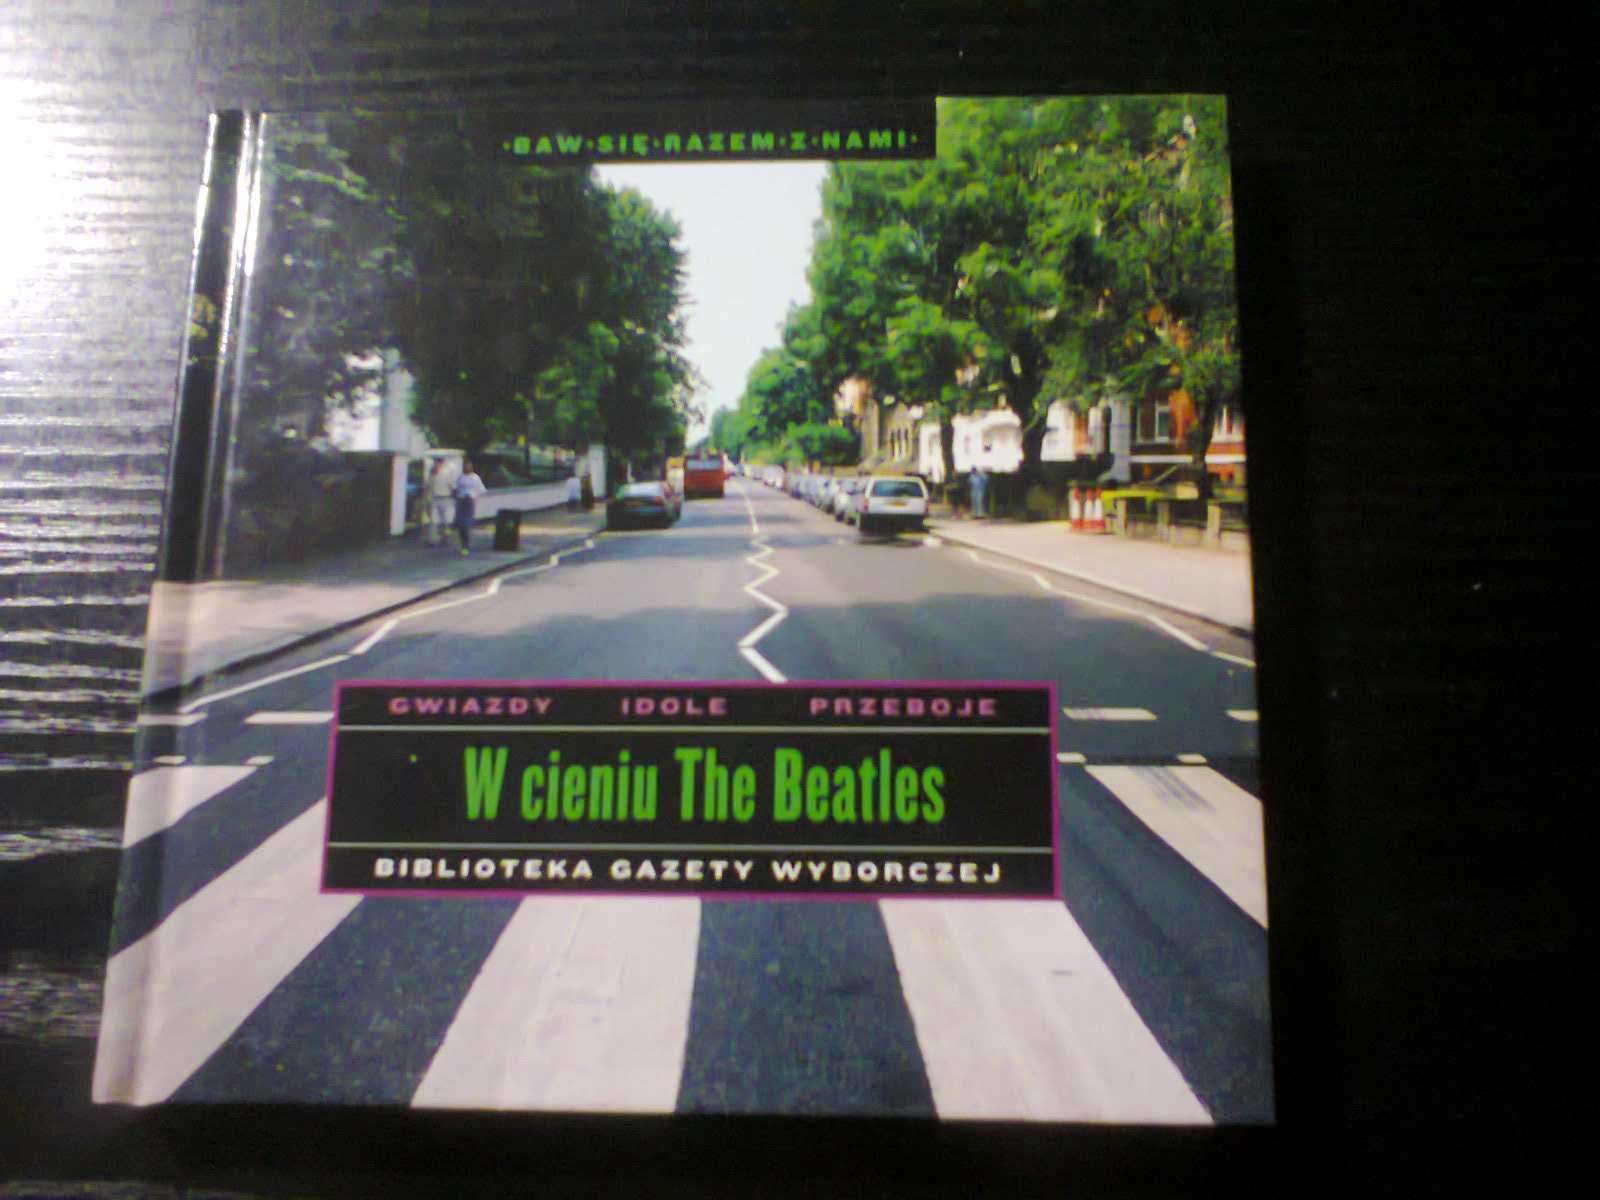 Płyta CD z książką "W cieniu The Beatles"